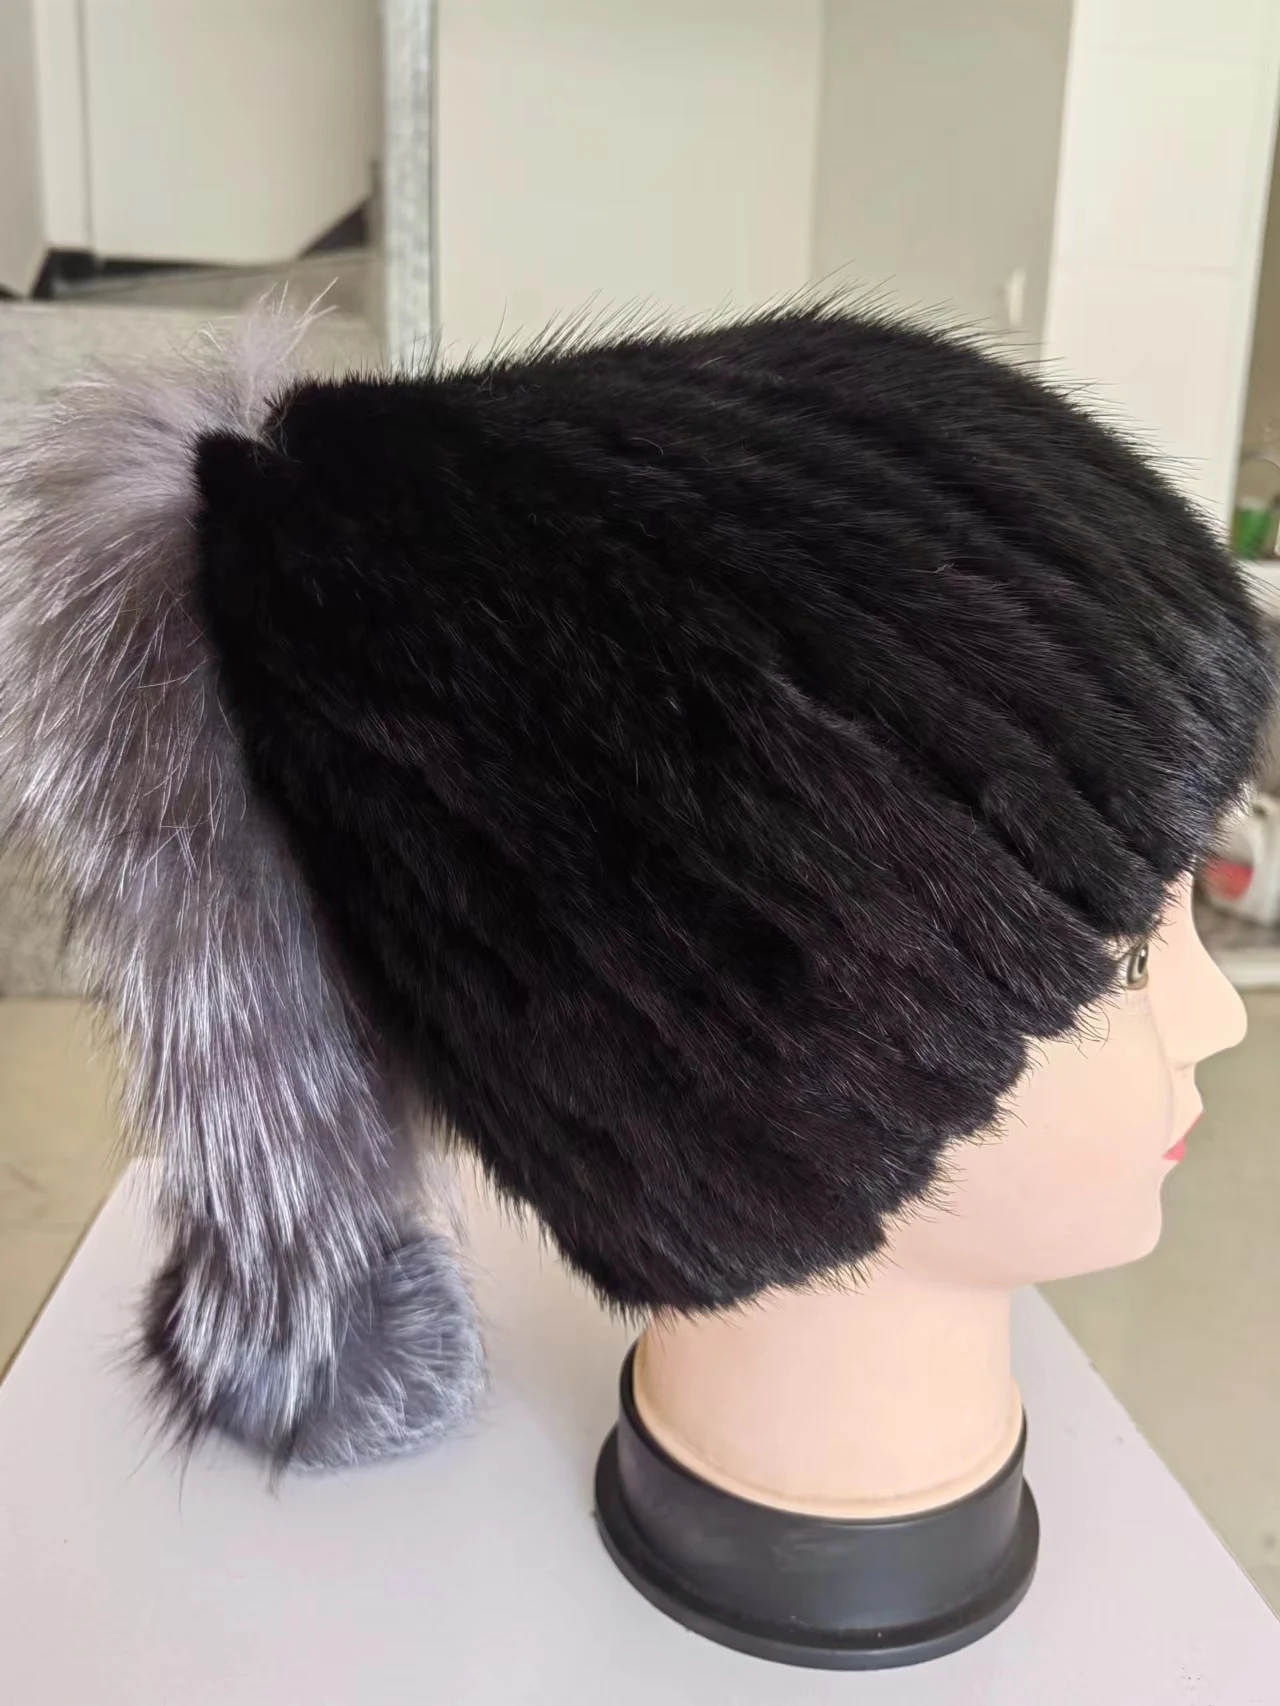 מינק שיער פרווה דשא נשים כובע חדש מעובה האוזן הגנה כדי לשמור על חם, אופנתי בחורף